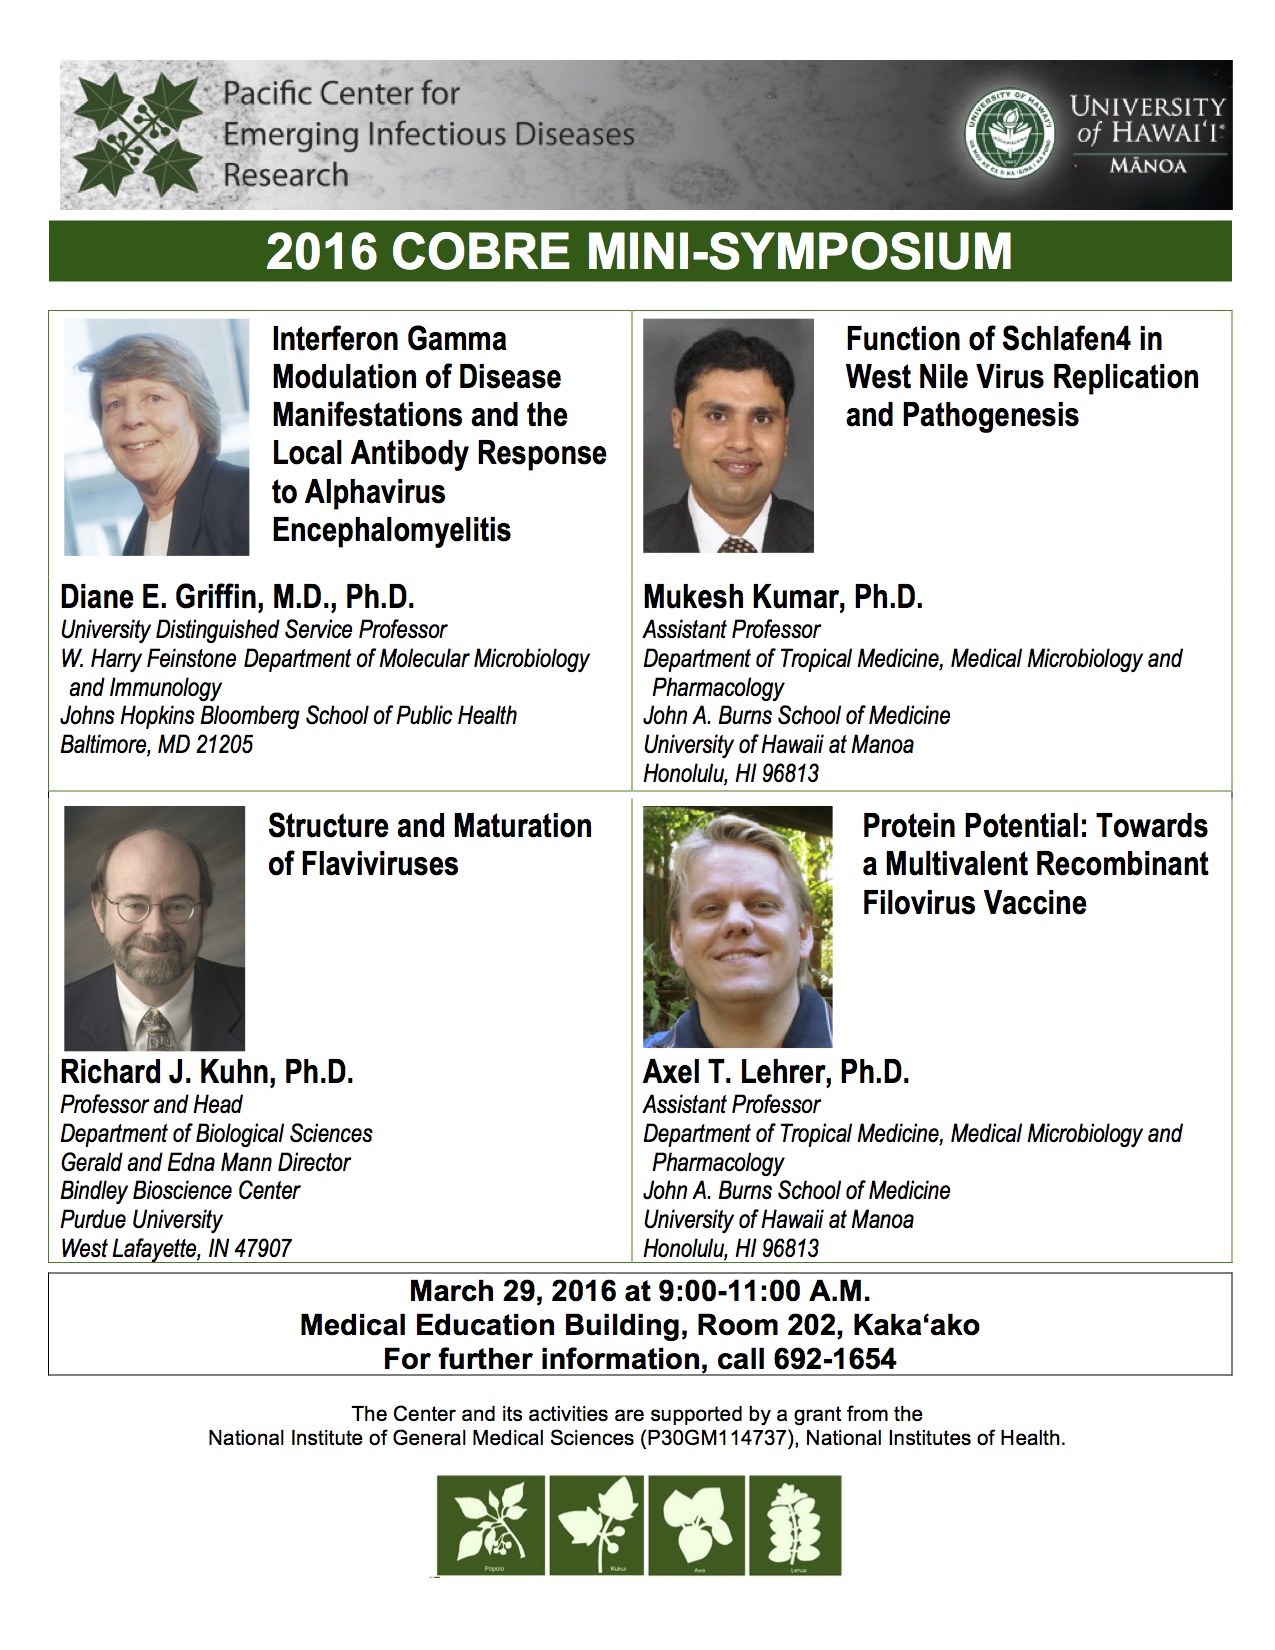 Mini-Symposium 2016